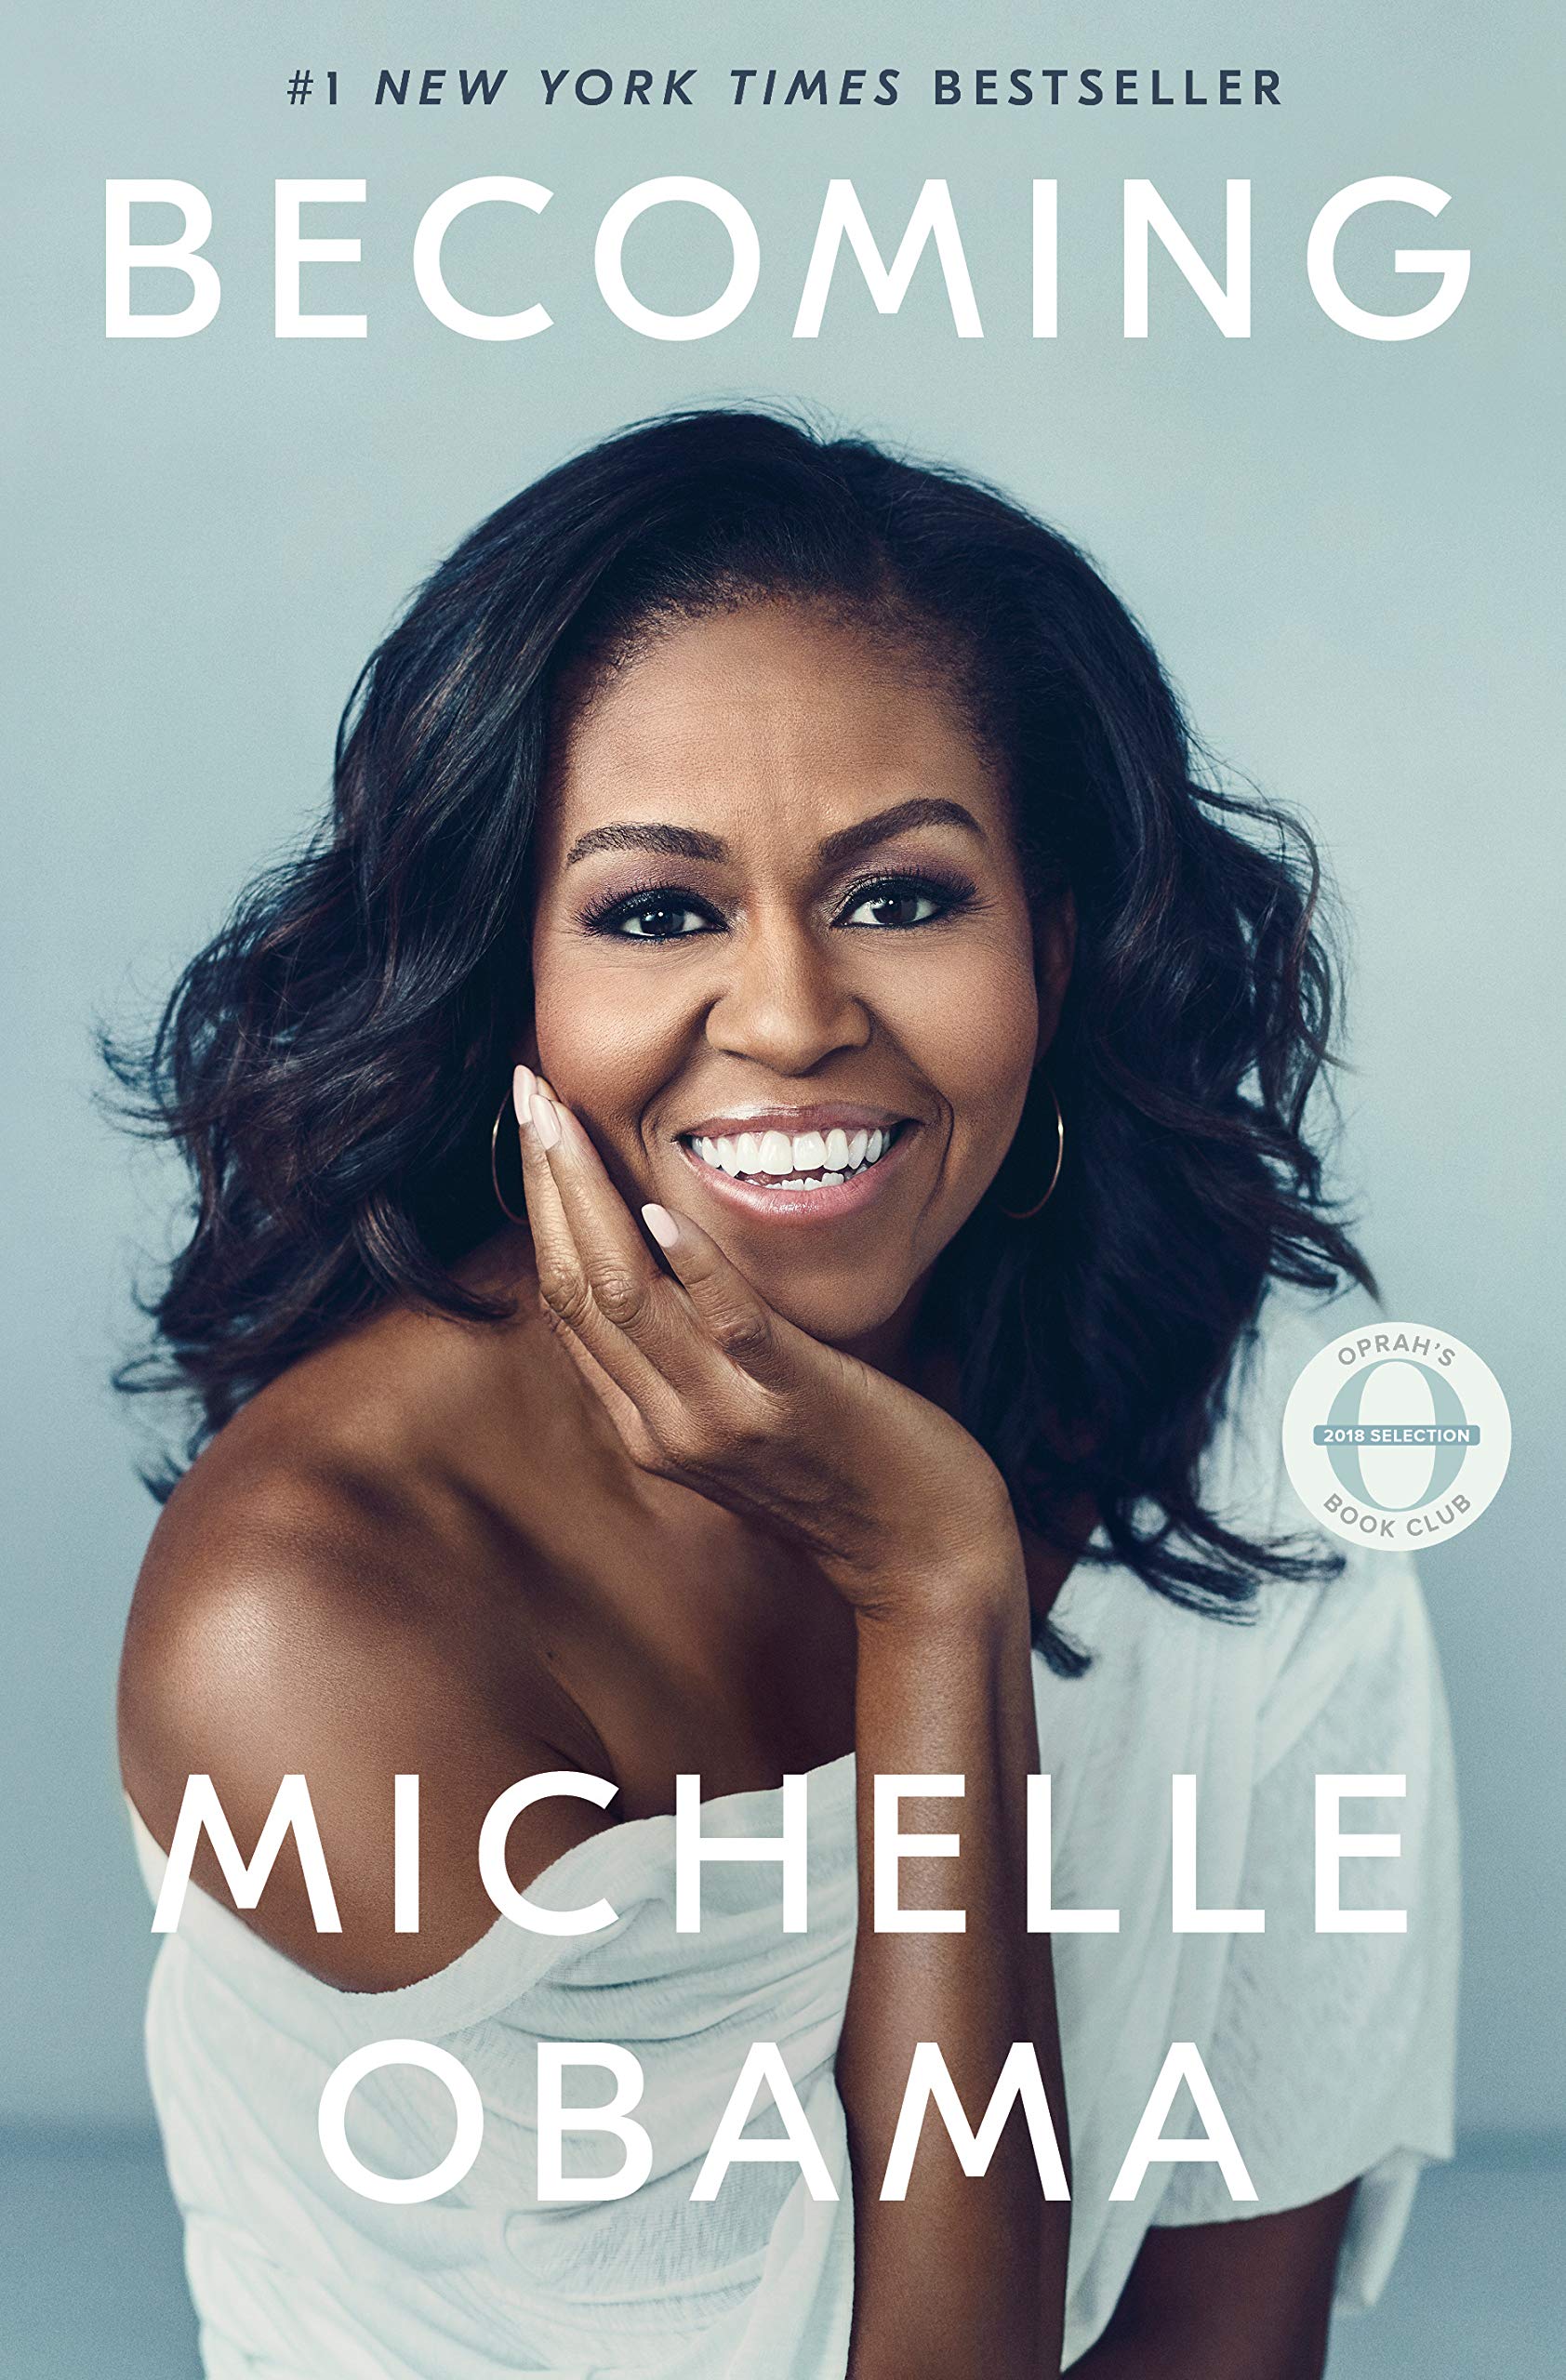 BECOMING: Meine Geschichte von Michelle Obama casual cooking foodblog